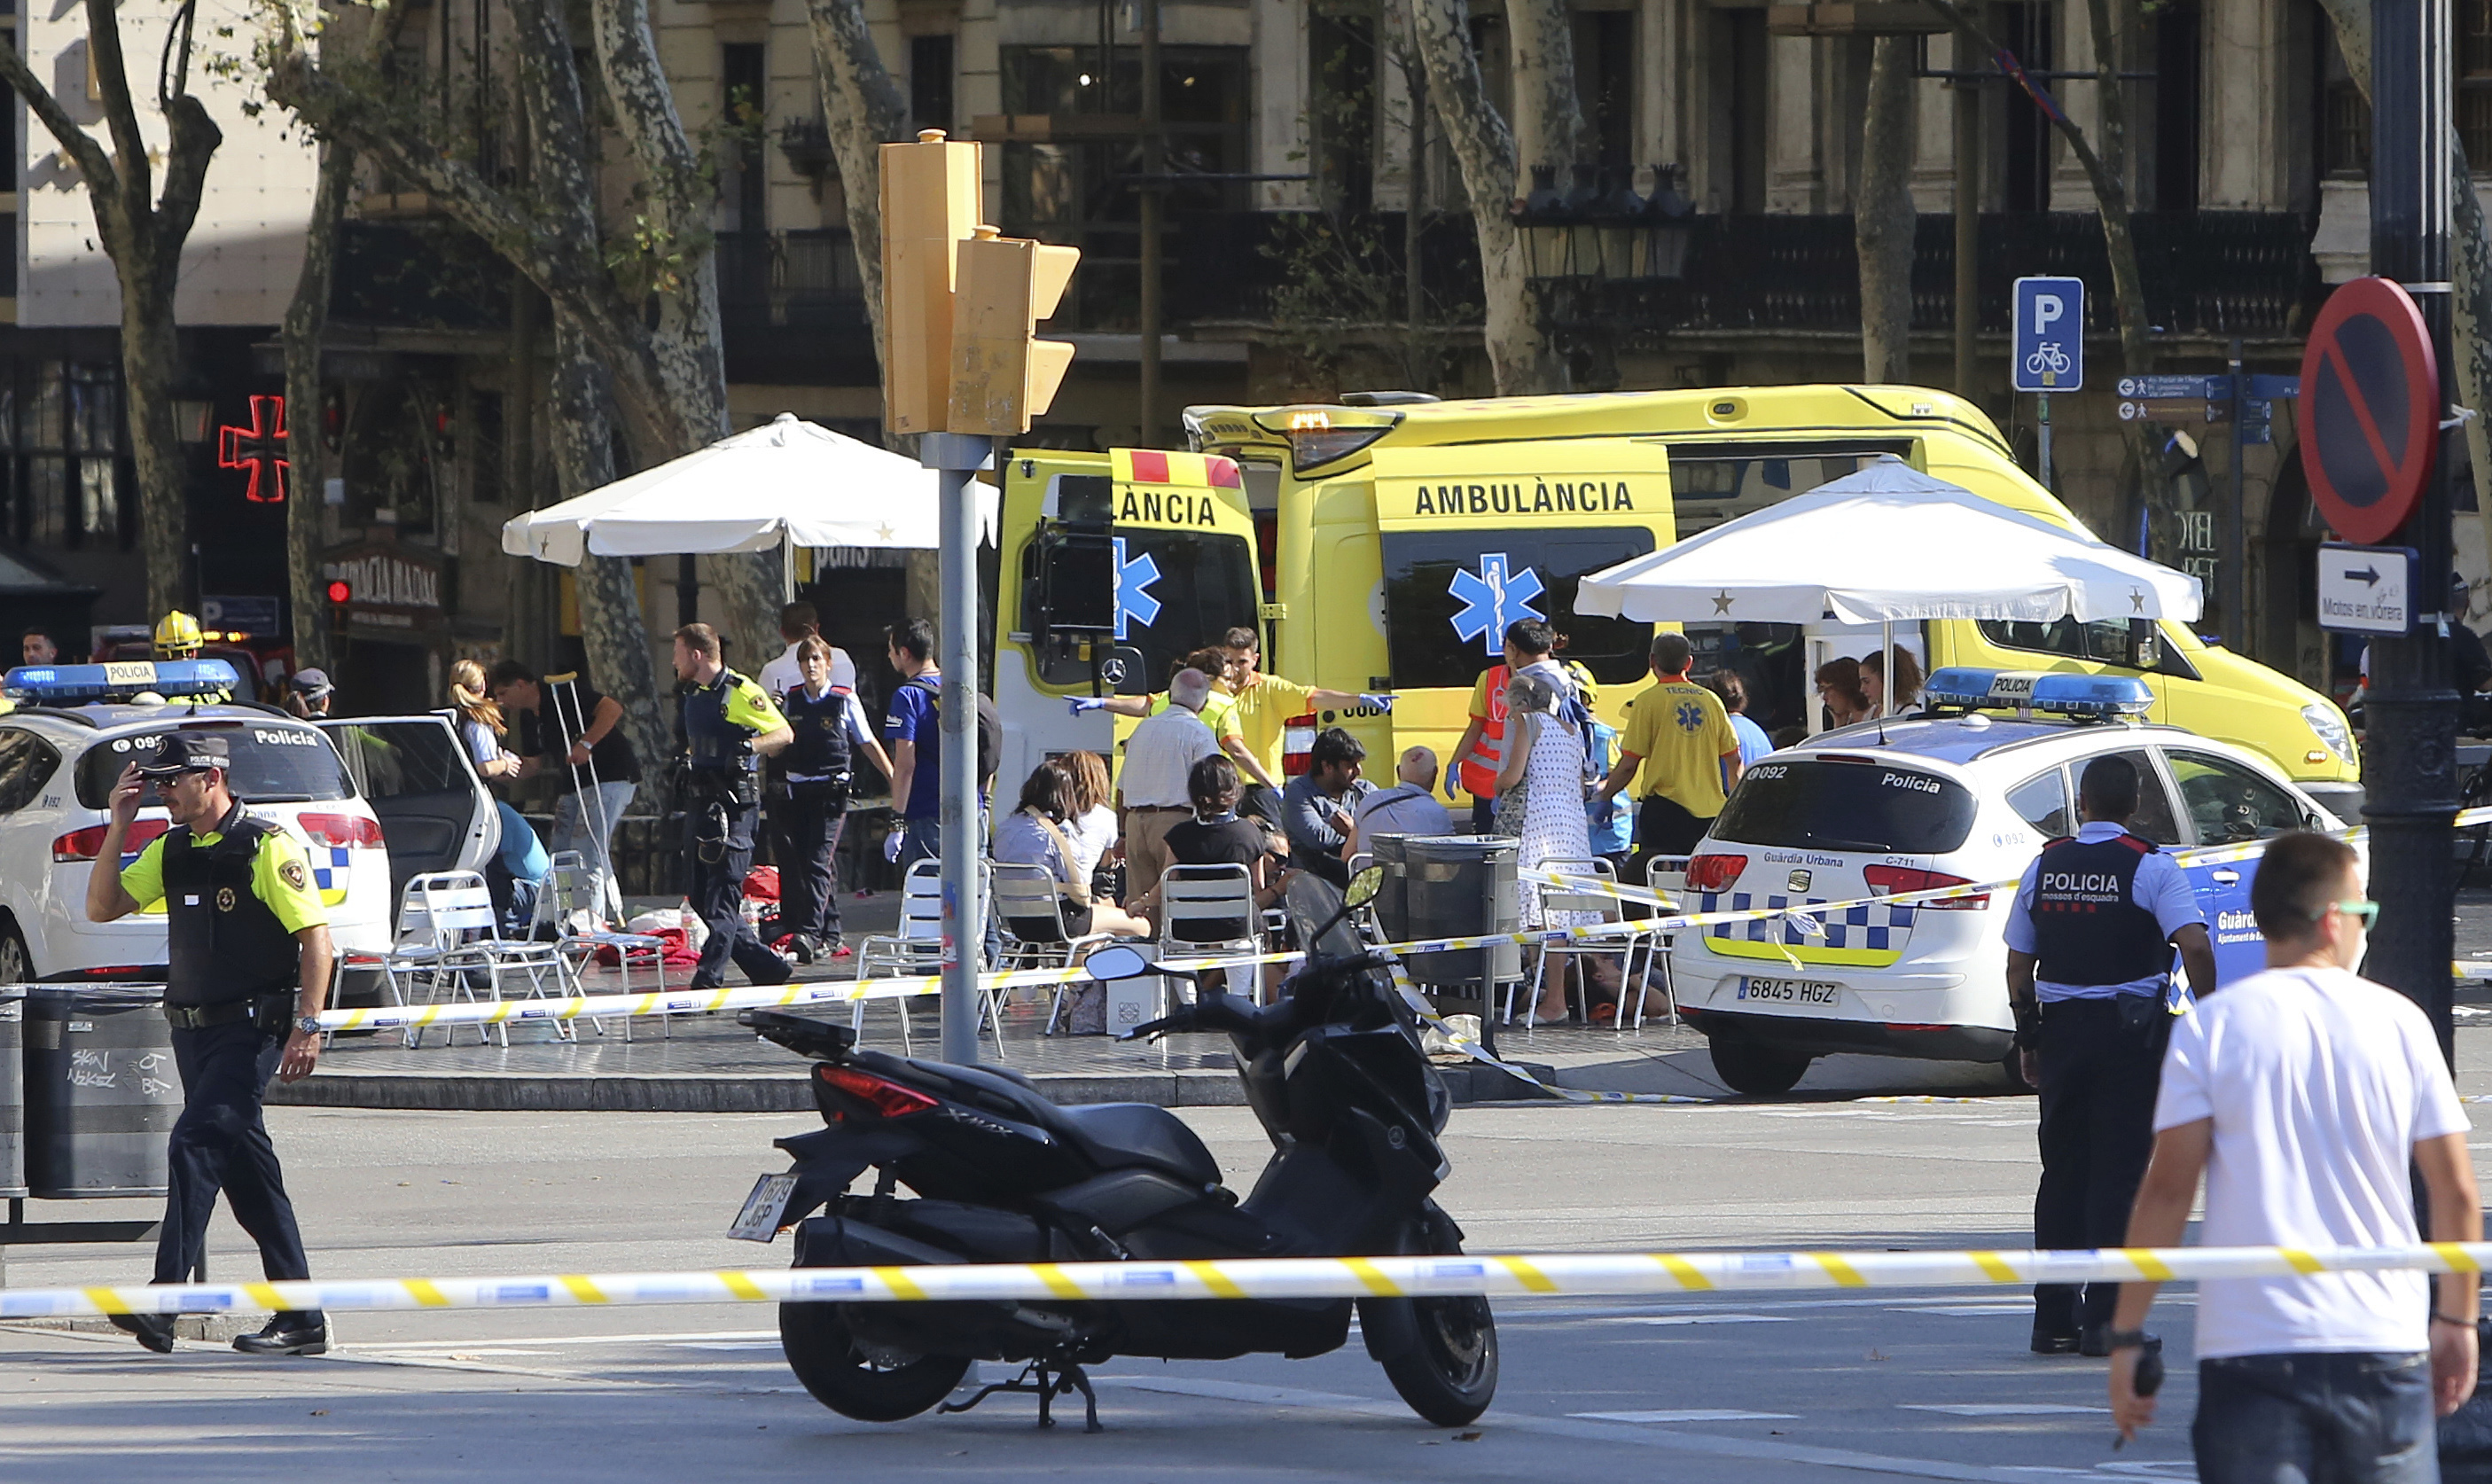 Barcelona: Policía no puede confirmar atentado en atropello, pero activa emergencia